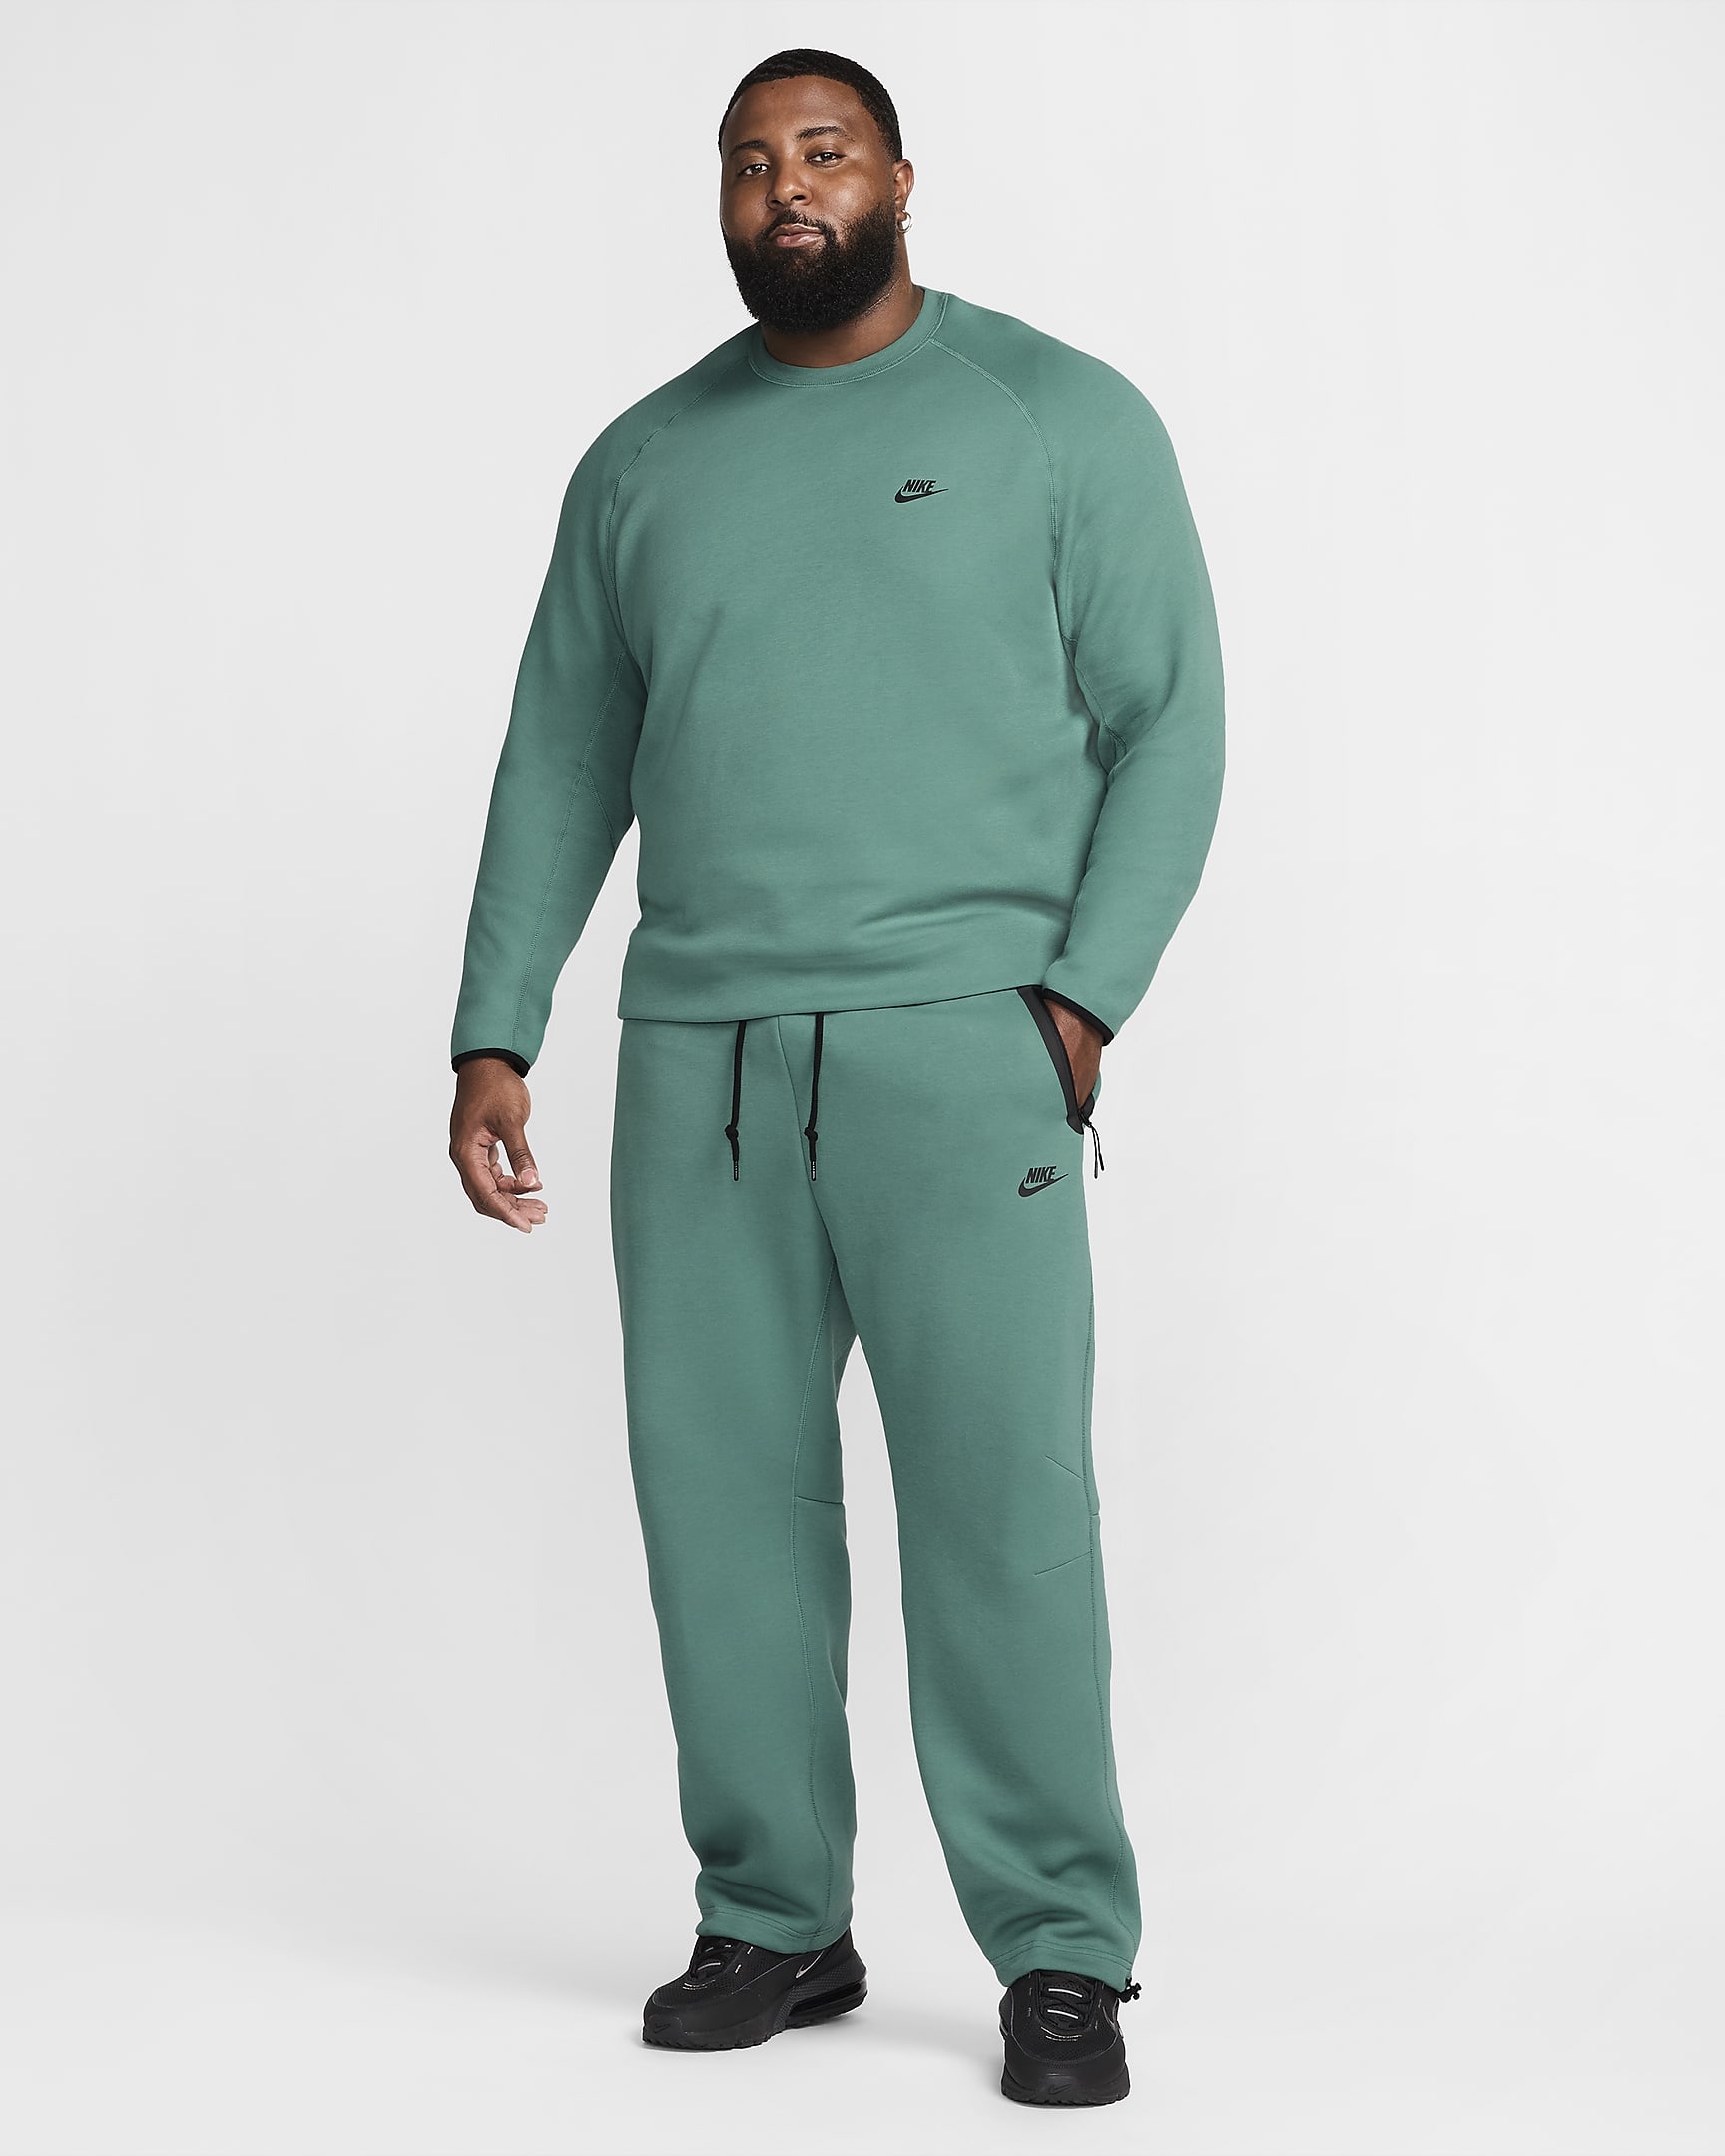 Nike Sportswear Tech Fleece Men's Open-Hem Sweatpants - Bicoastal/Black